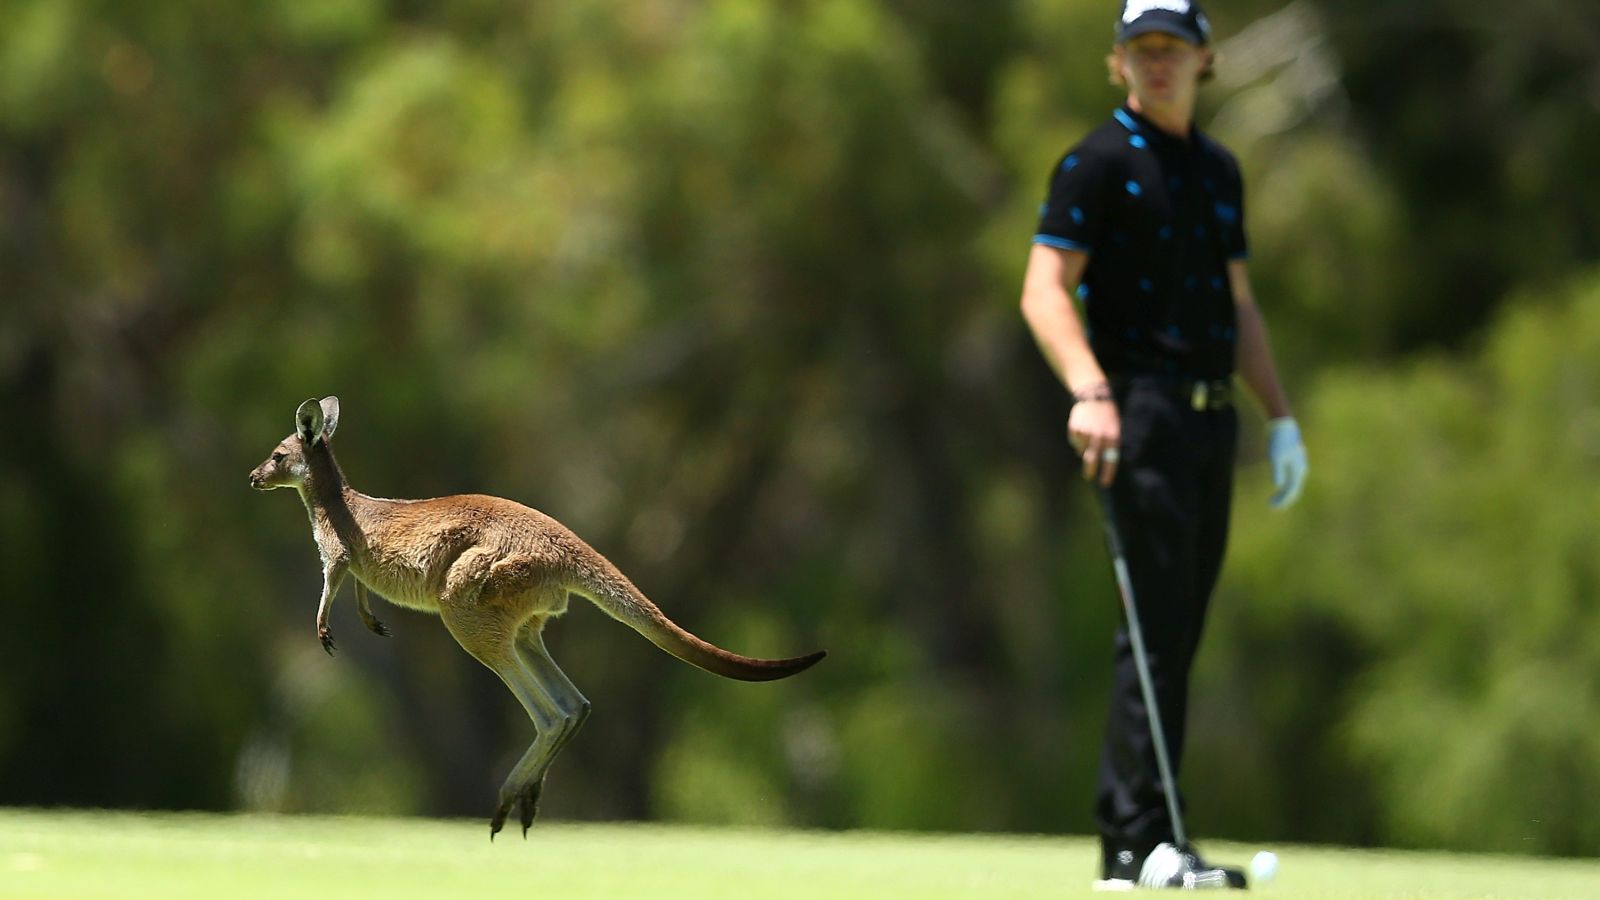 Golf in Australien - da kann es passieren, dass ein Känguru oder ein etwas kleineres Wallaby beim Putten stört. © Paul Kane/Getty Images